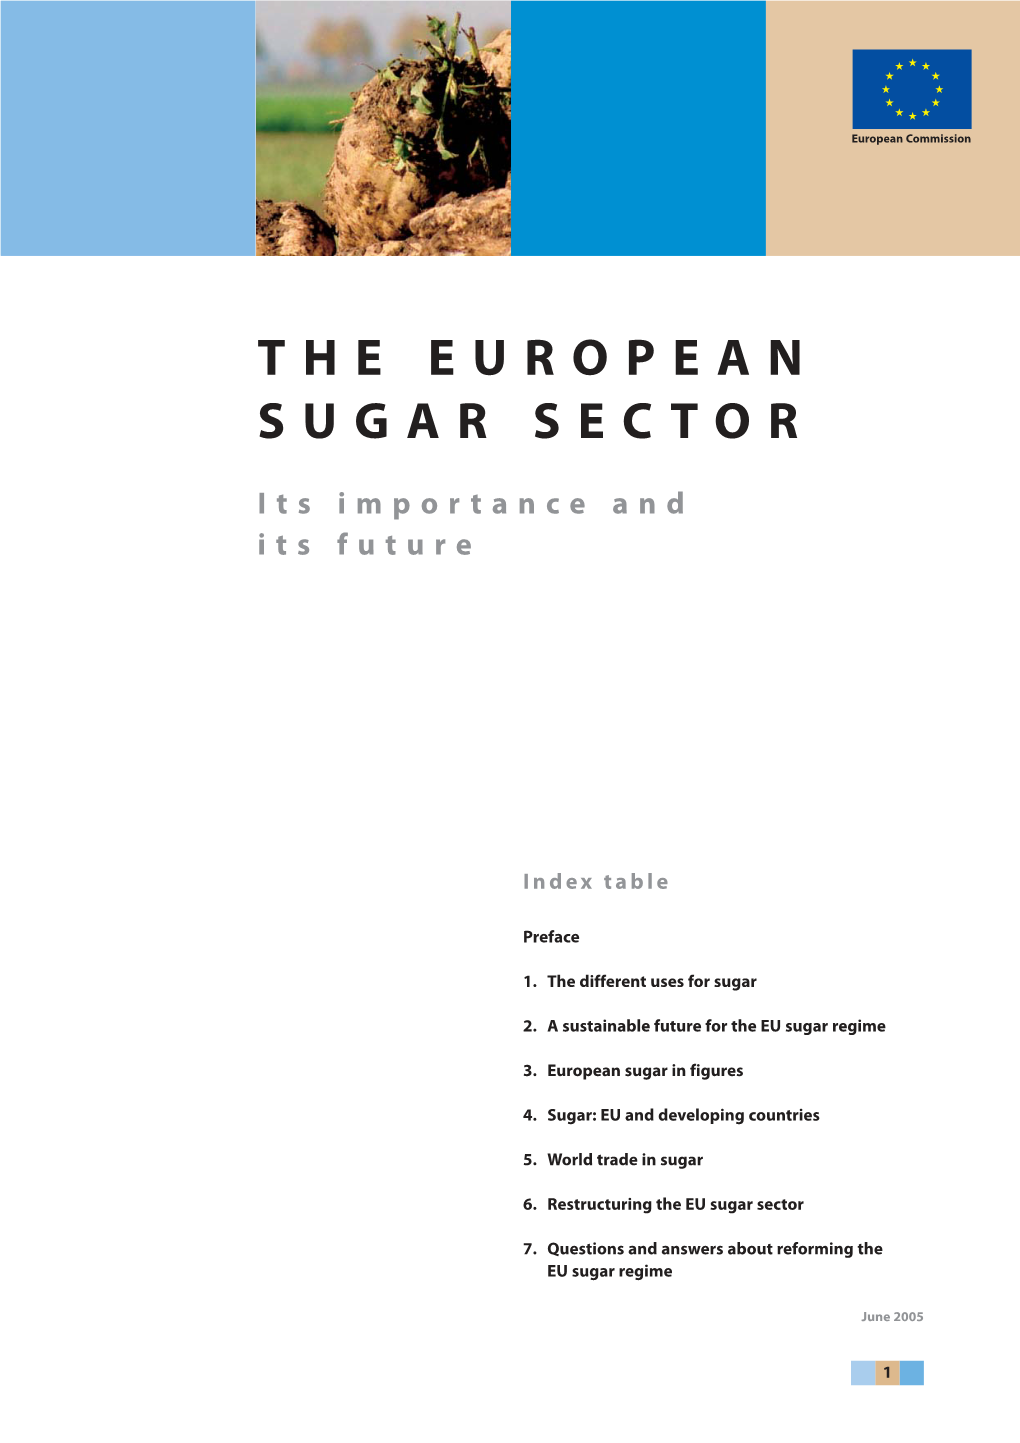 Infopack: the European Sugar Sector